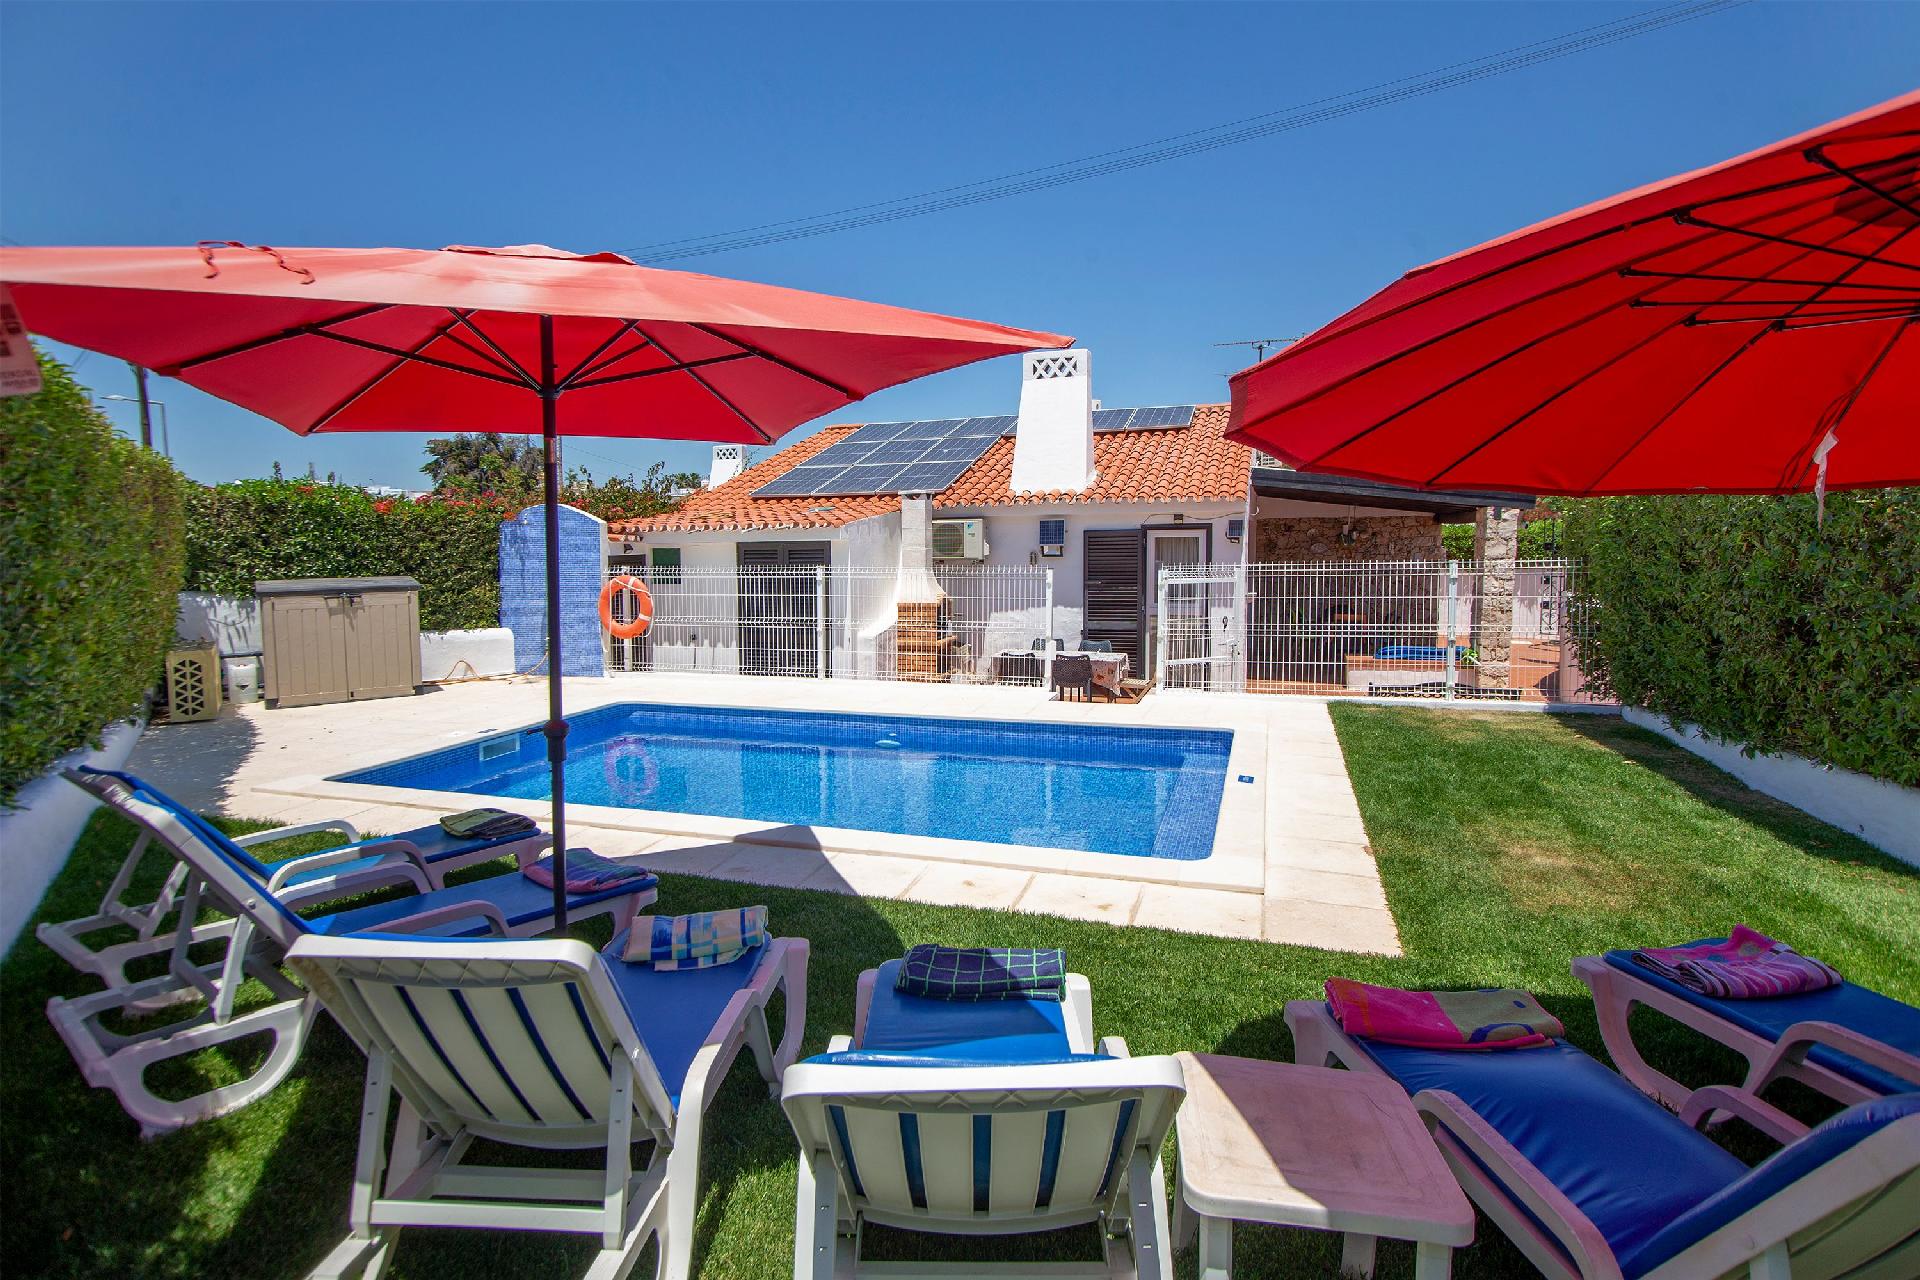 Ferienhaus mit Privatpool für 6 Personen ca.  Ferienhaus in Portugal